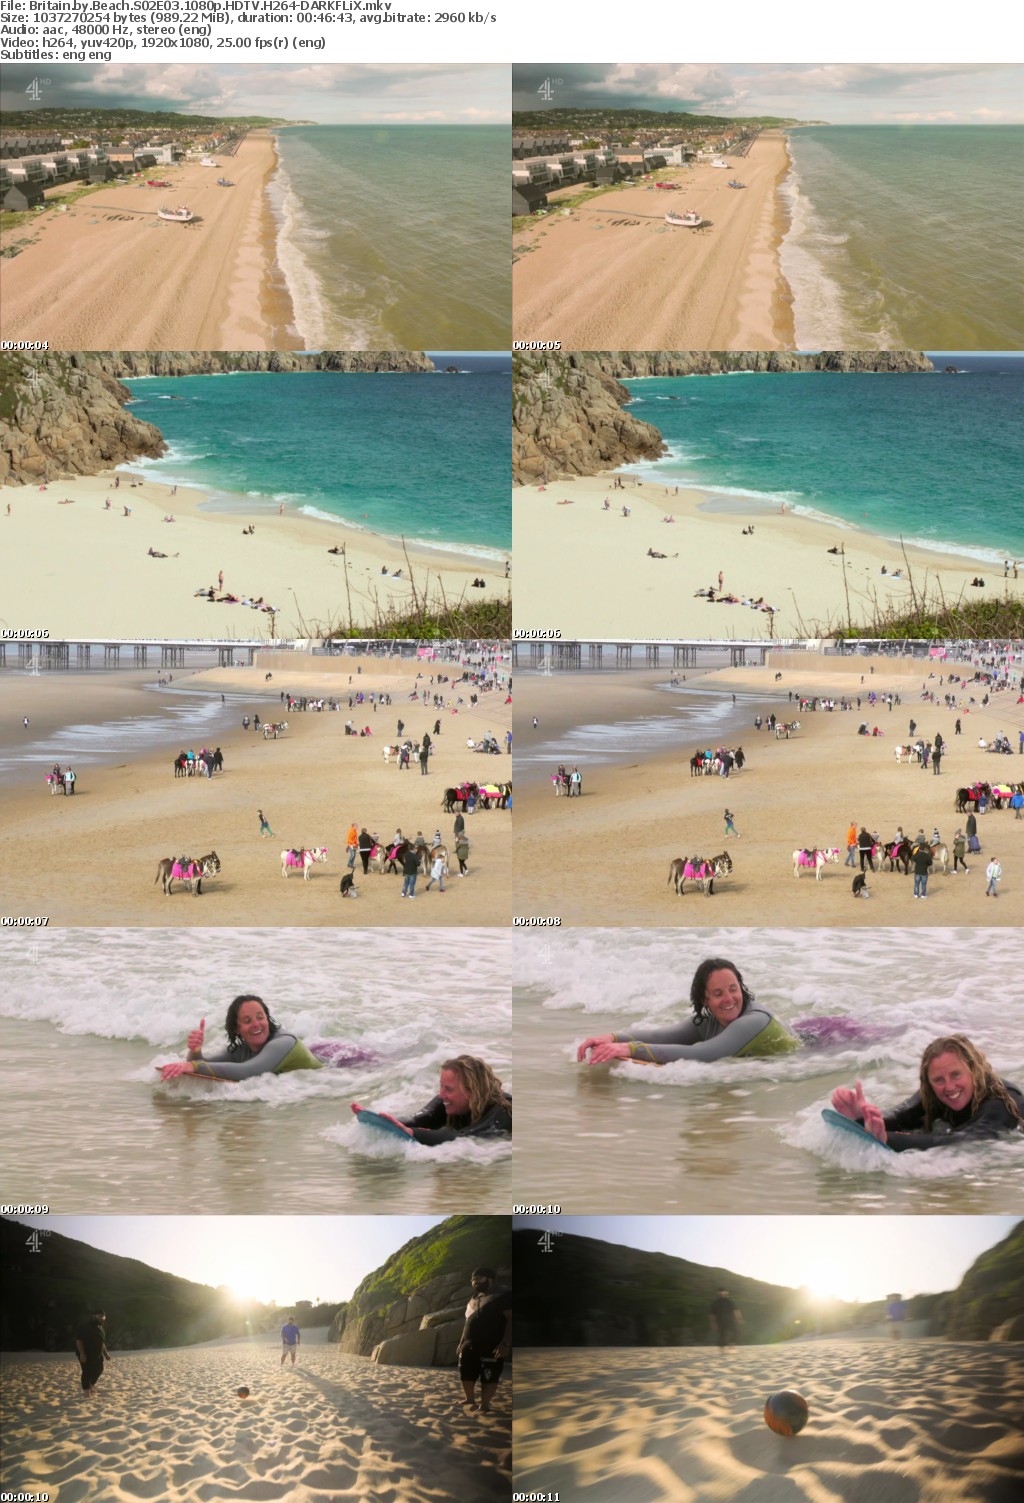 Britain by Beach S02 1080p HDTV H264-DARKFLiX